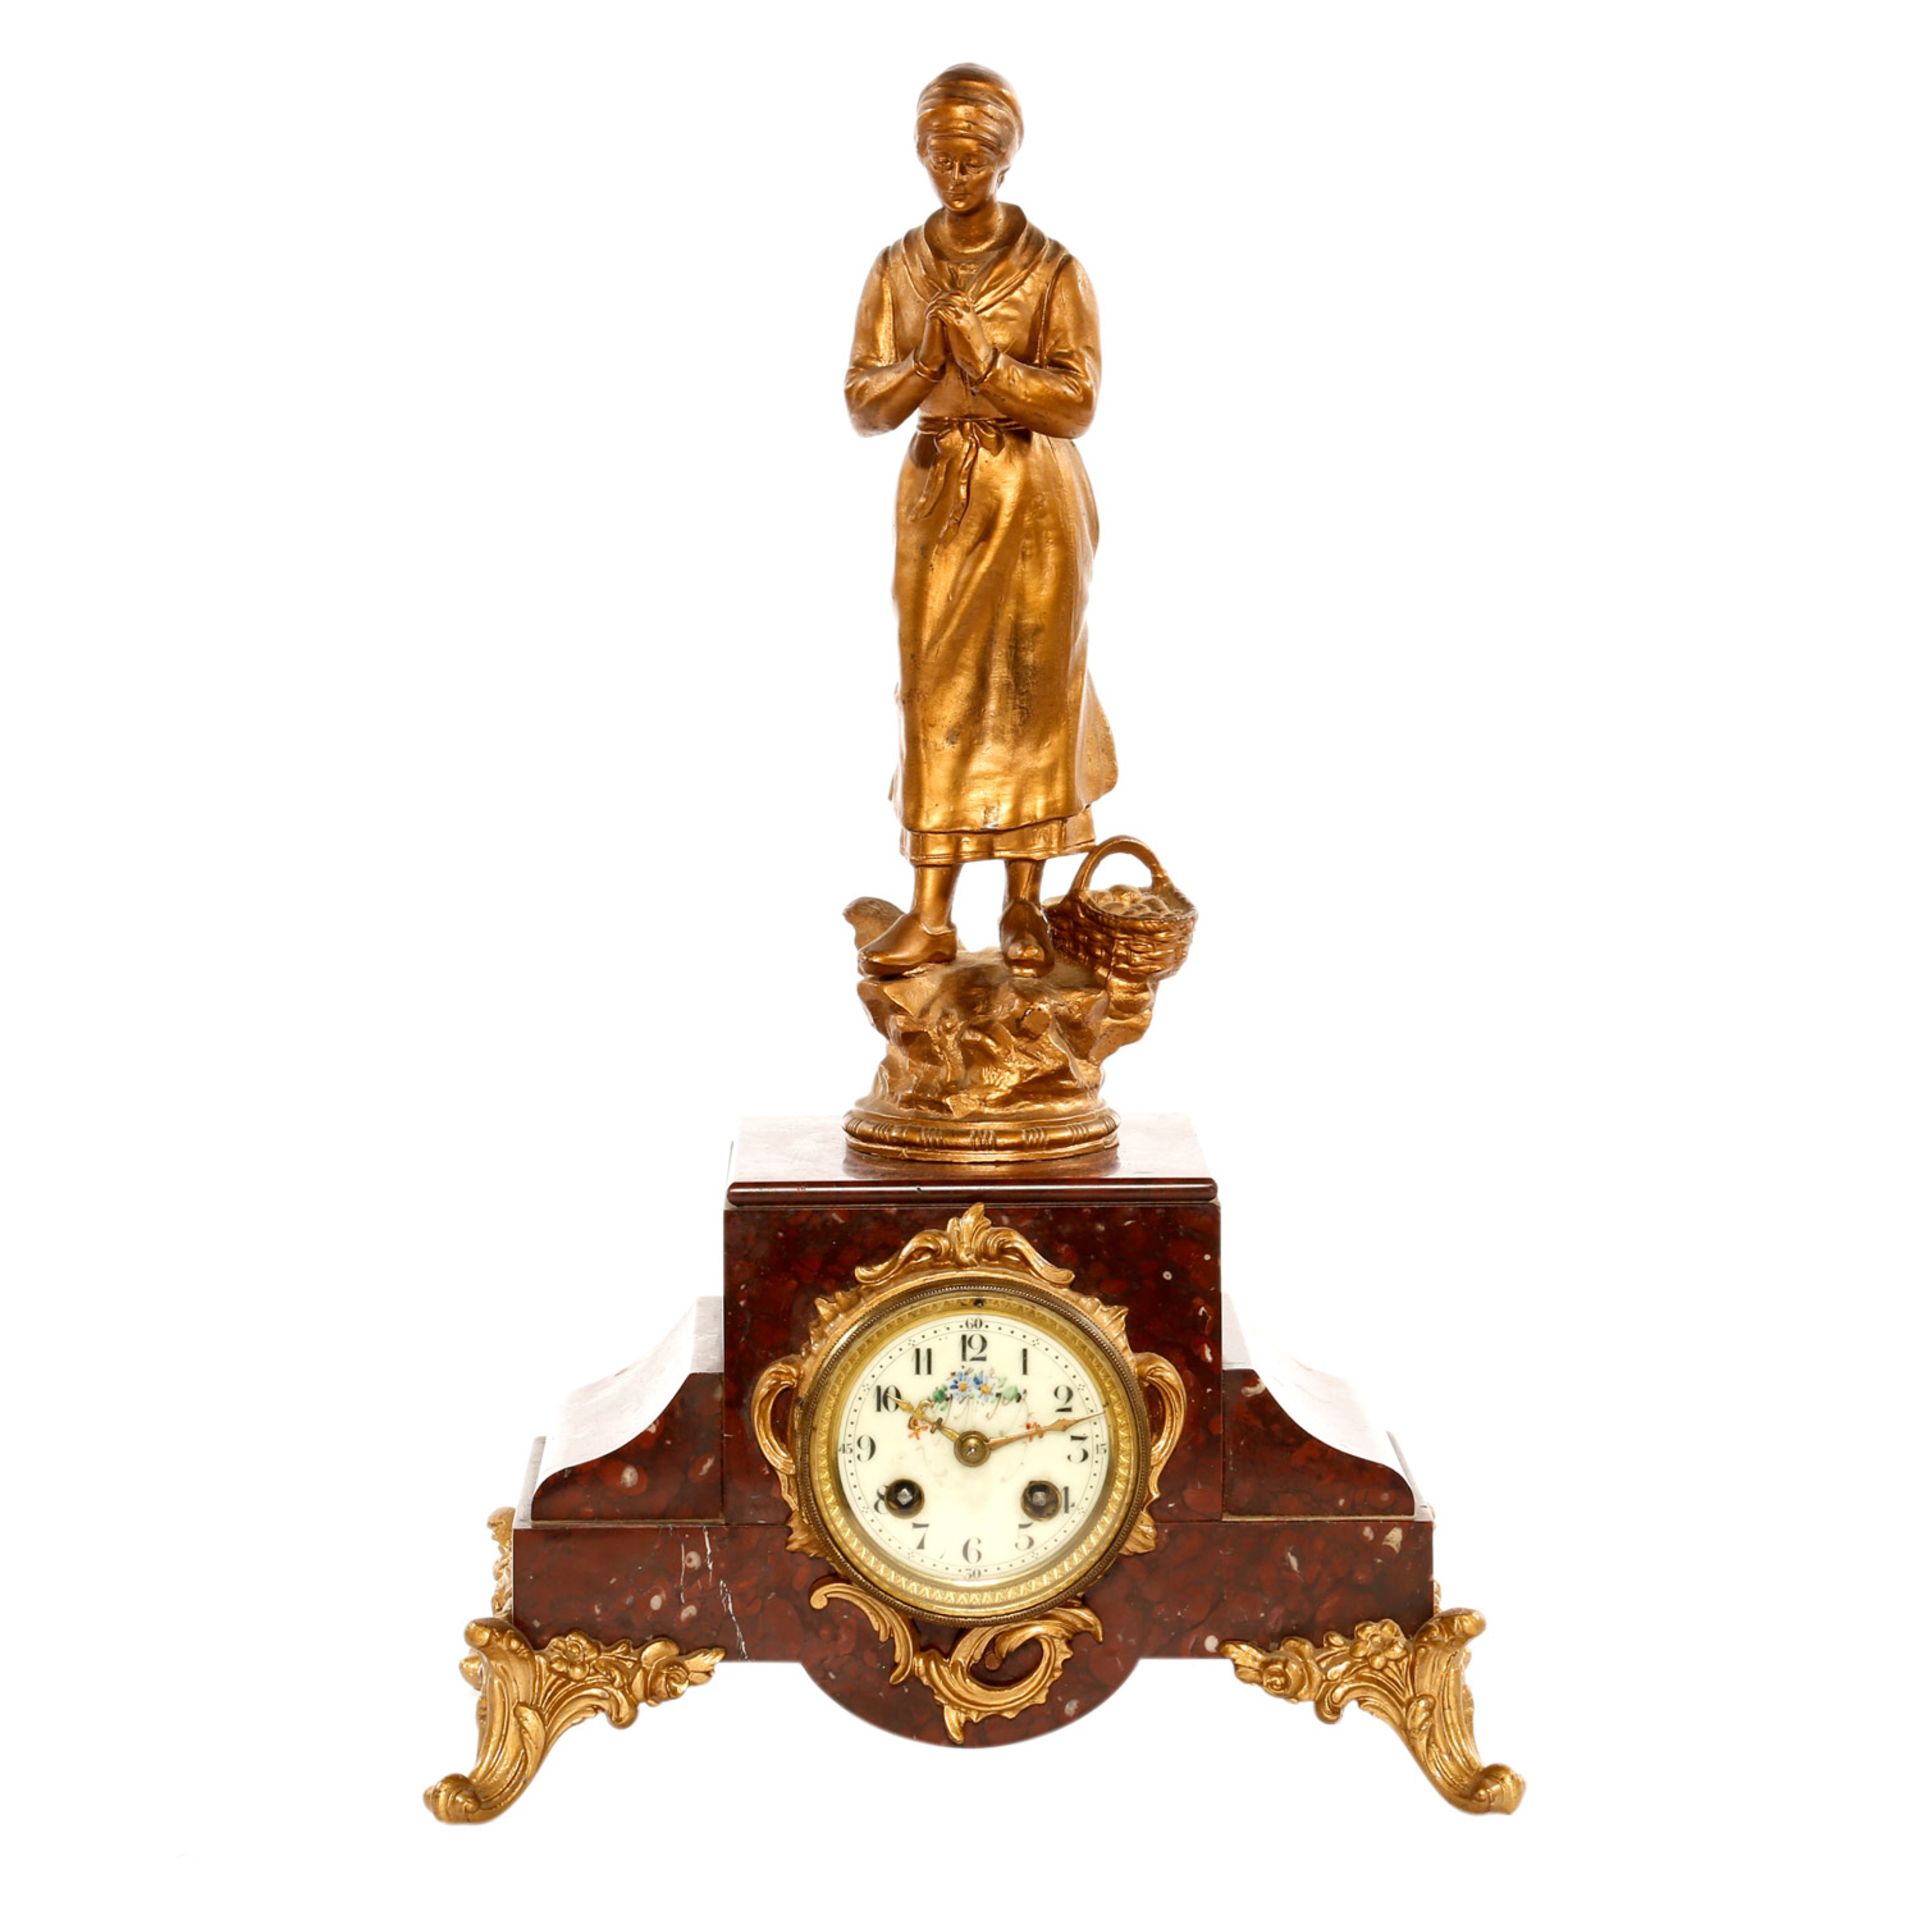 PENDULE Frankreich, um 1900, Marmor und Metallguss bronziert bzw. vergoldet, Pendulenwerk mit